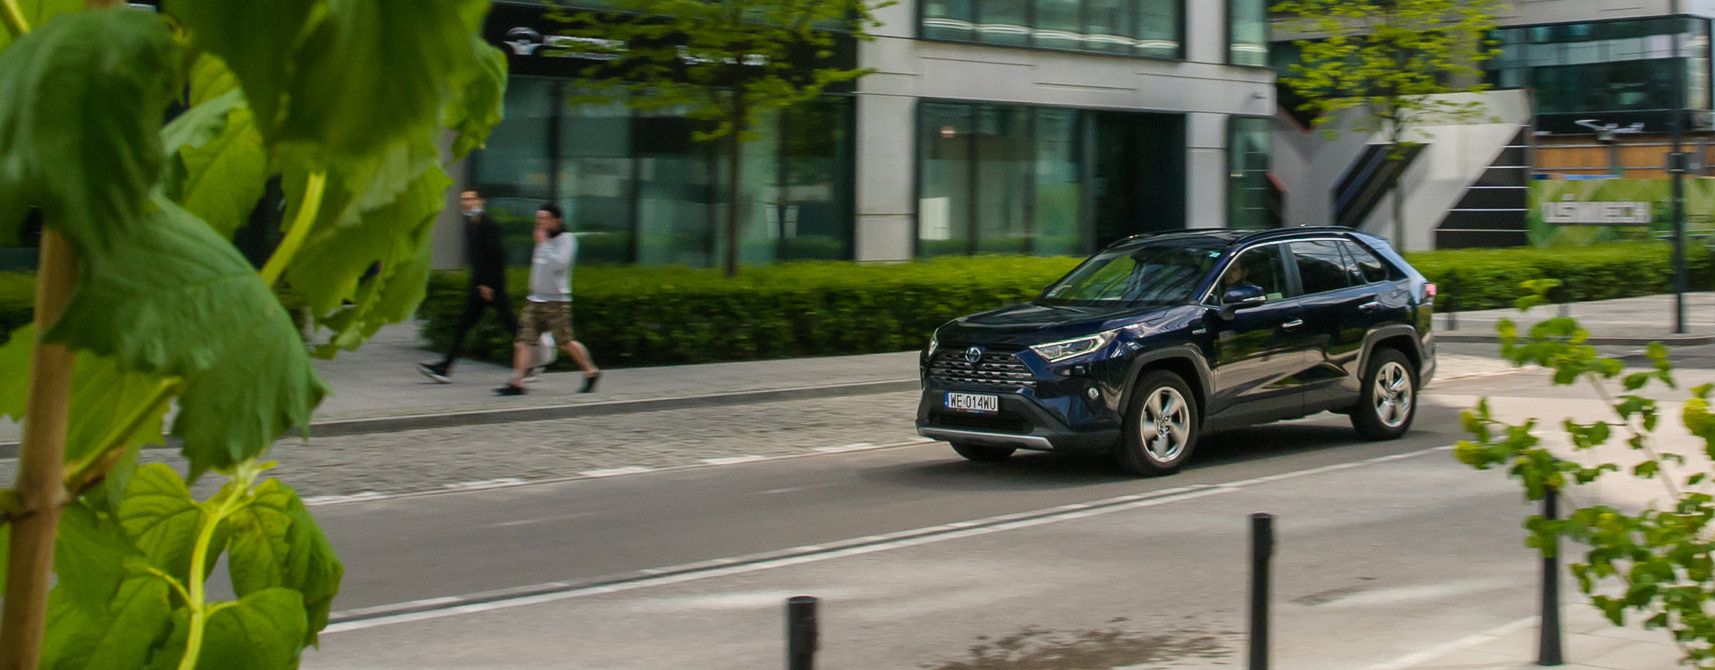 Jak oszczędna jest hybryda w mieście? Sprawdziłem to na przykładzie Toyoty RAV4 | Autokult.pl